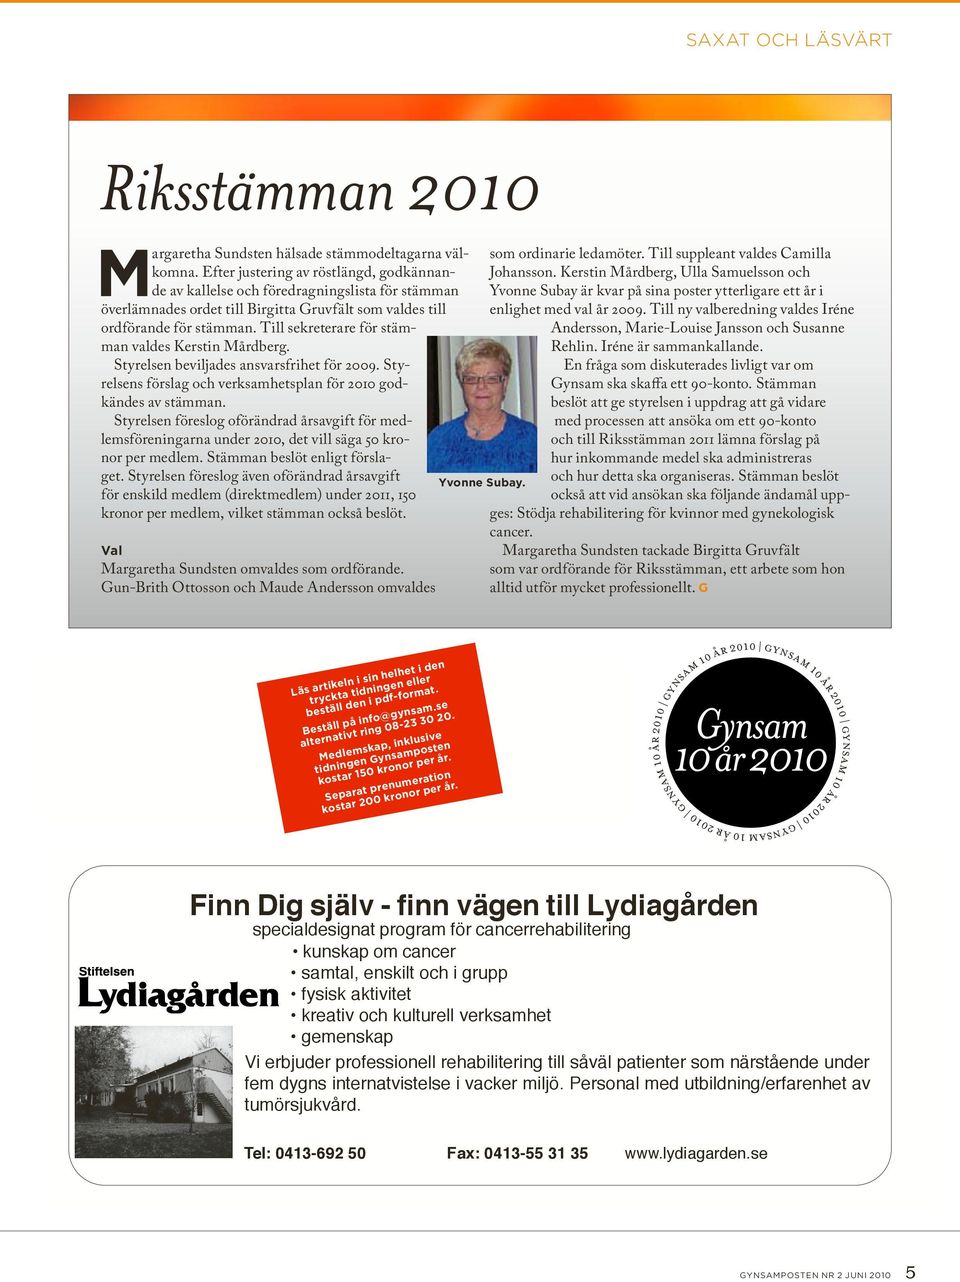 Till sekreterare för stämman valdes Kerstin Mårdberg. Styrelsen beviljades ansvarsfrihet för 2009. Styrelsens förslag och verksamhetsplan för 2010 godkändes av stämman.